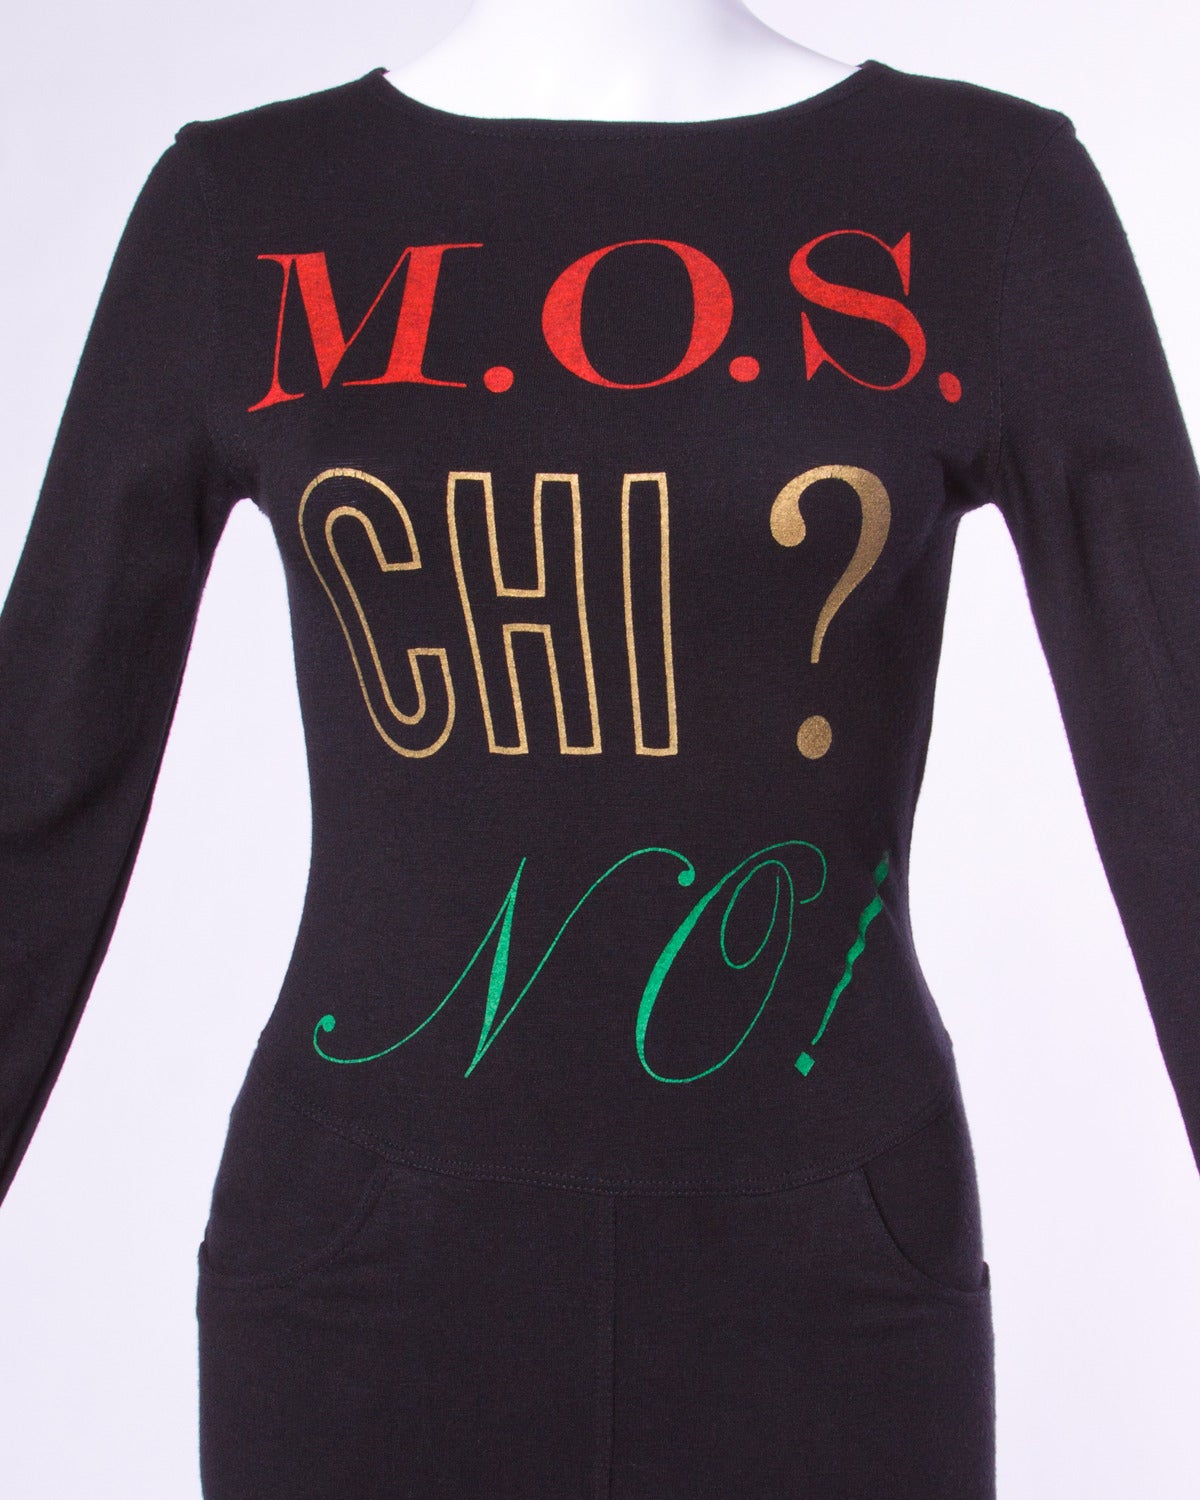 Noir Moschino Jeans - Robe à manches longues vintage avec imprimé graphique « M.O.S. CHI? NO! » NO! » Robe à manches longues en vente